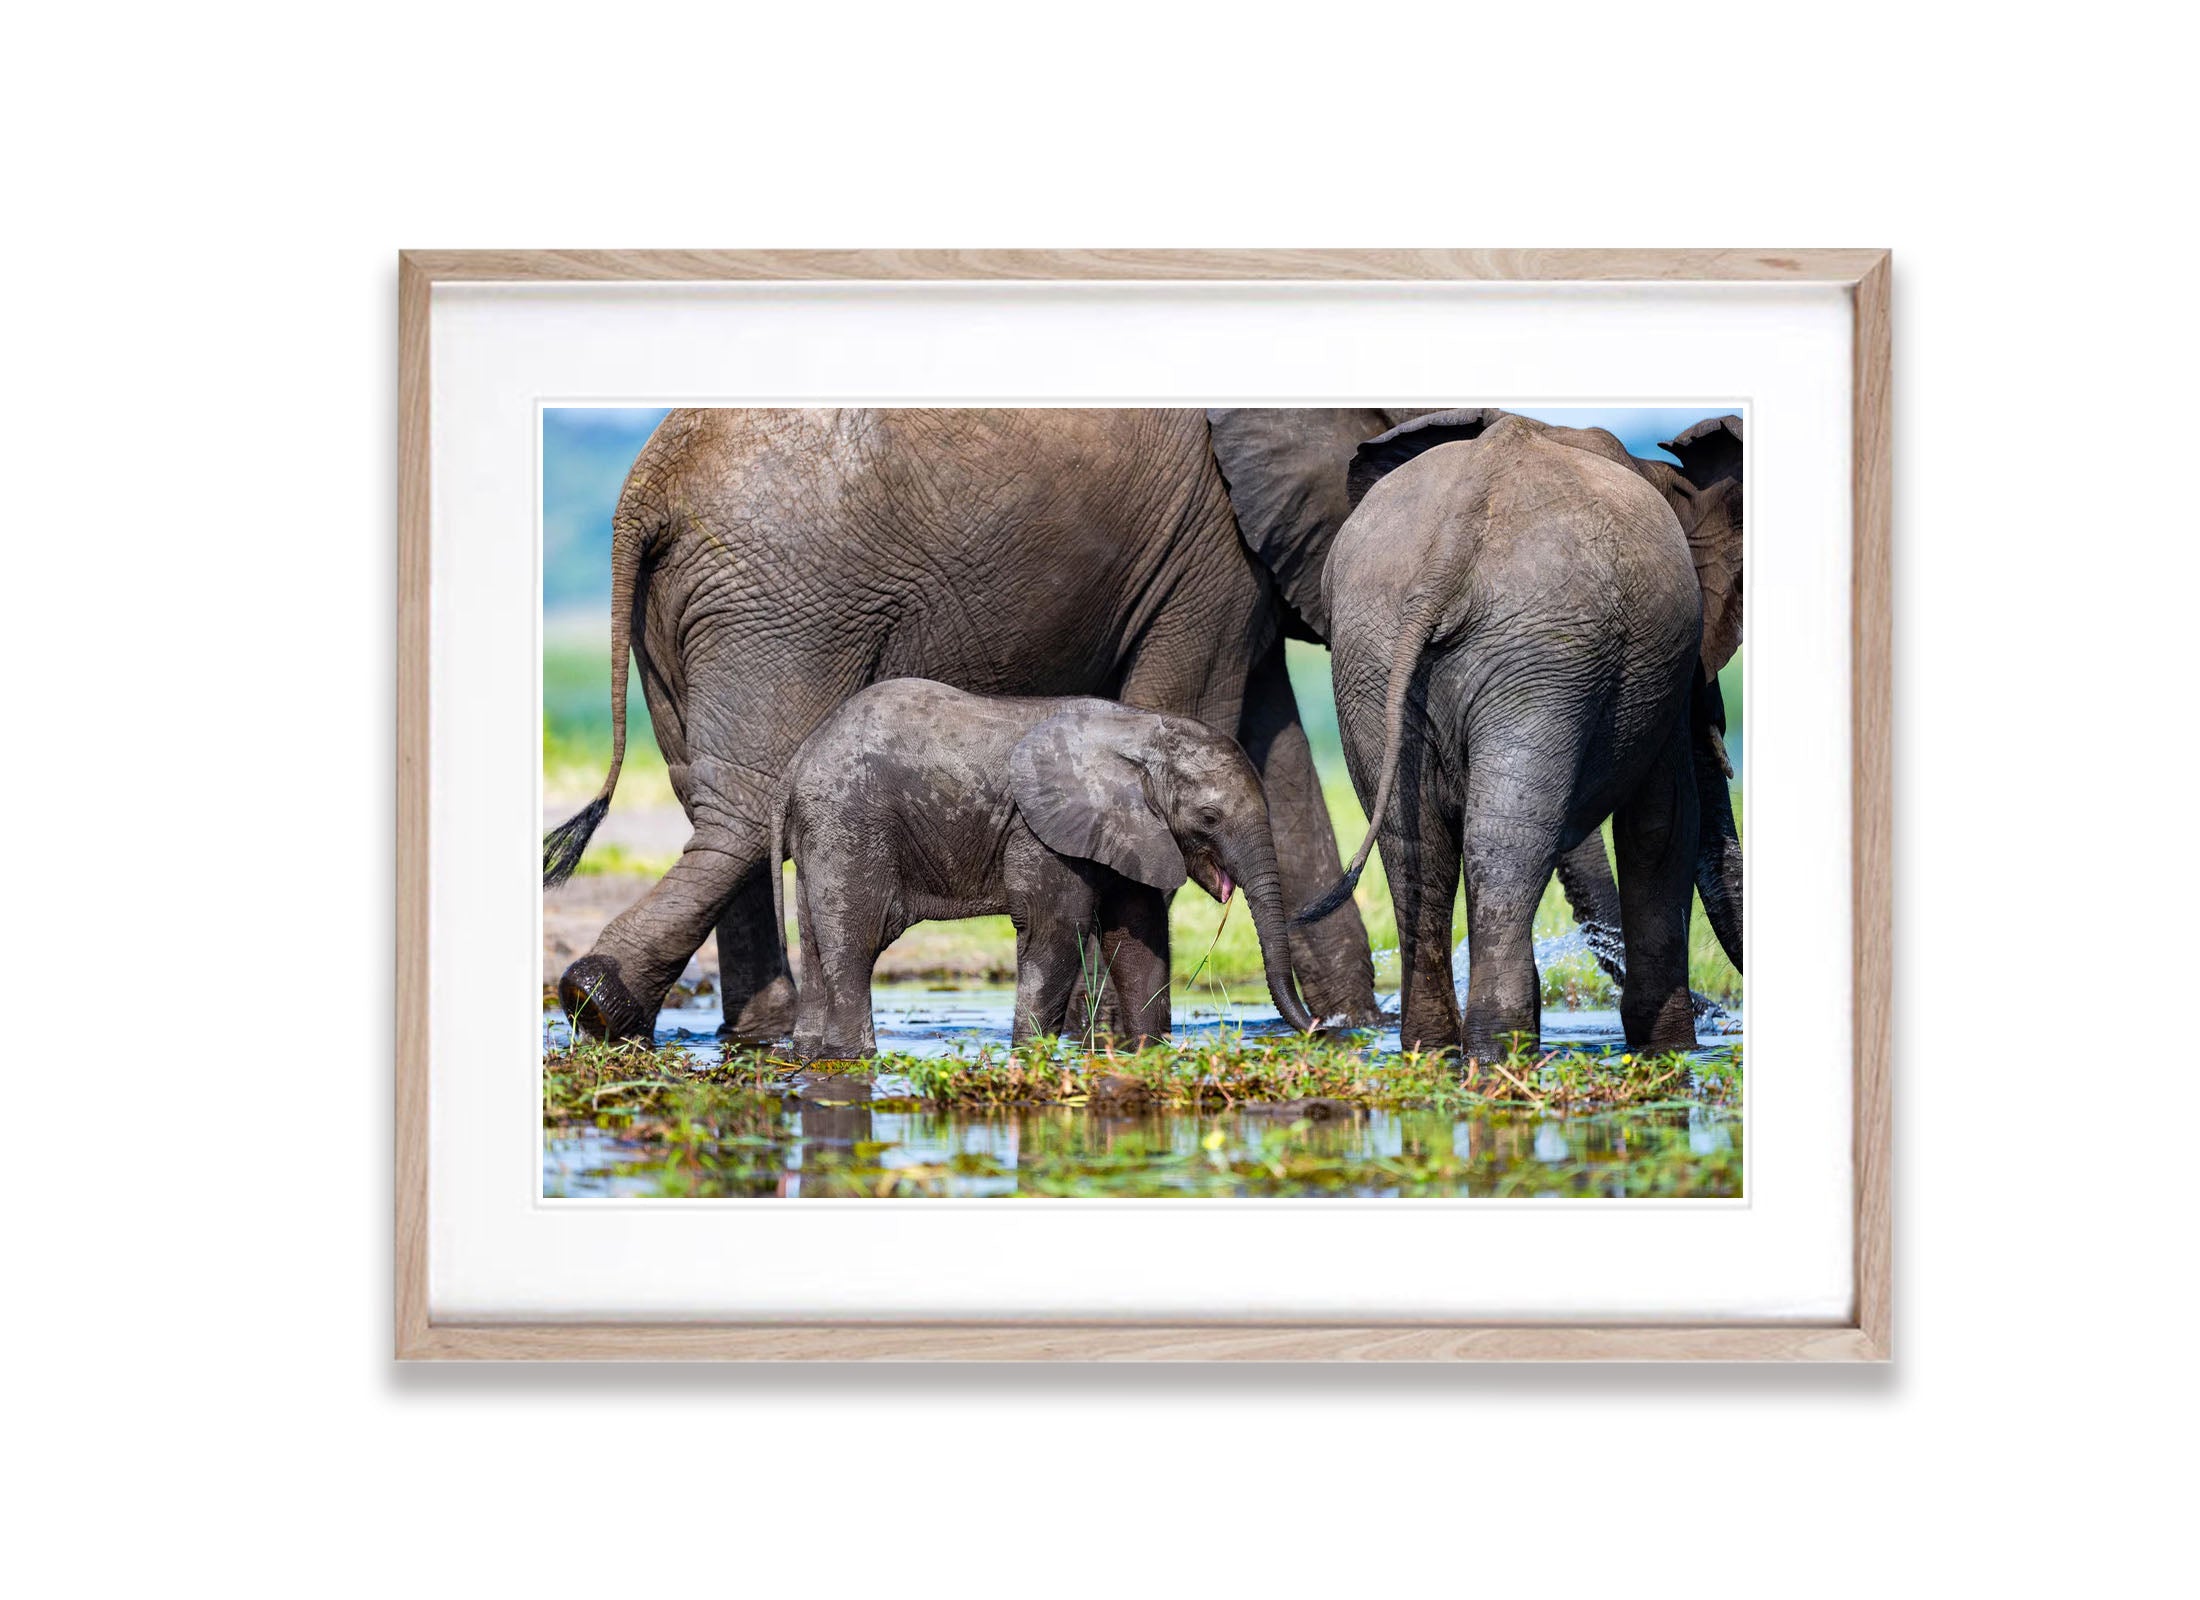 The Baby Elephant, Chobe River, Botswana